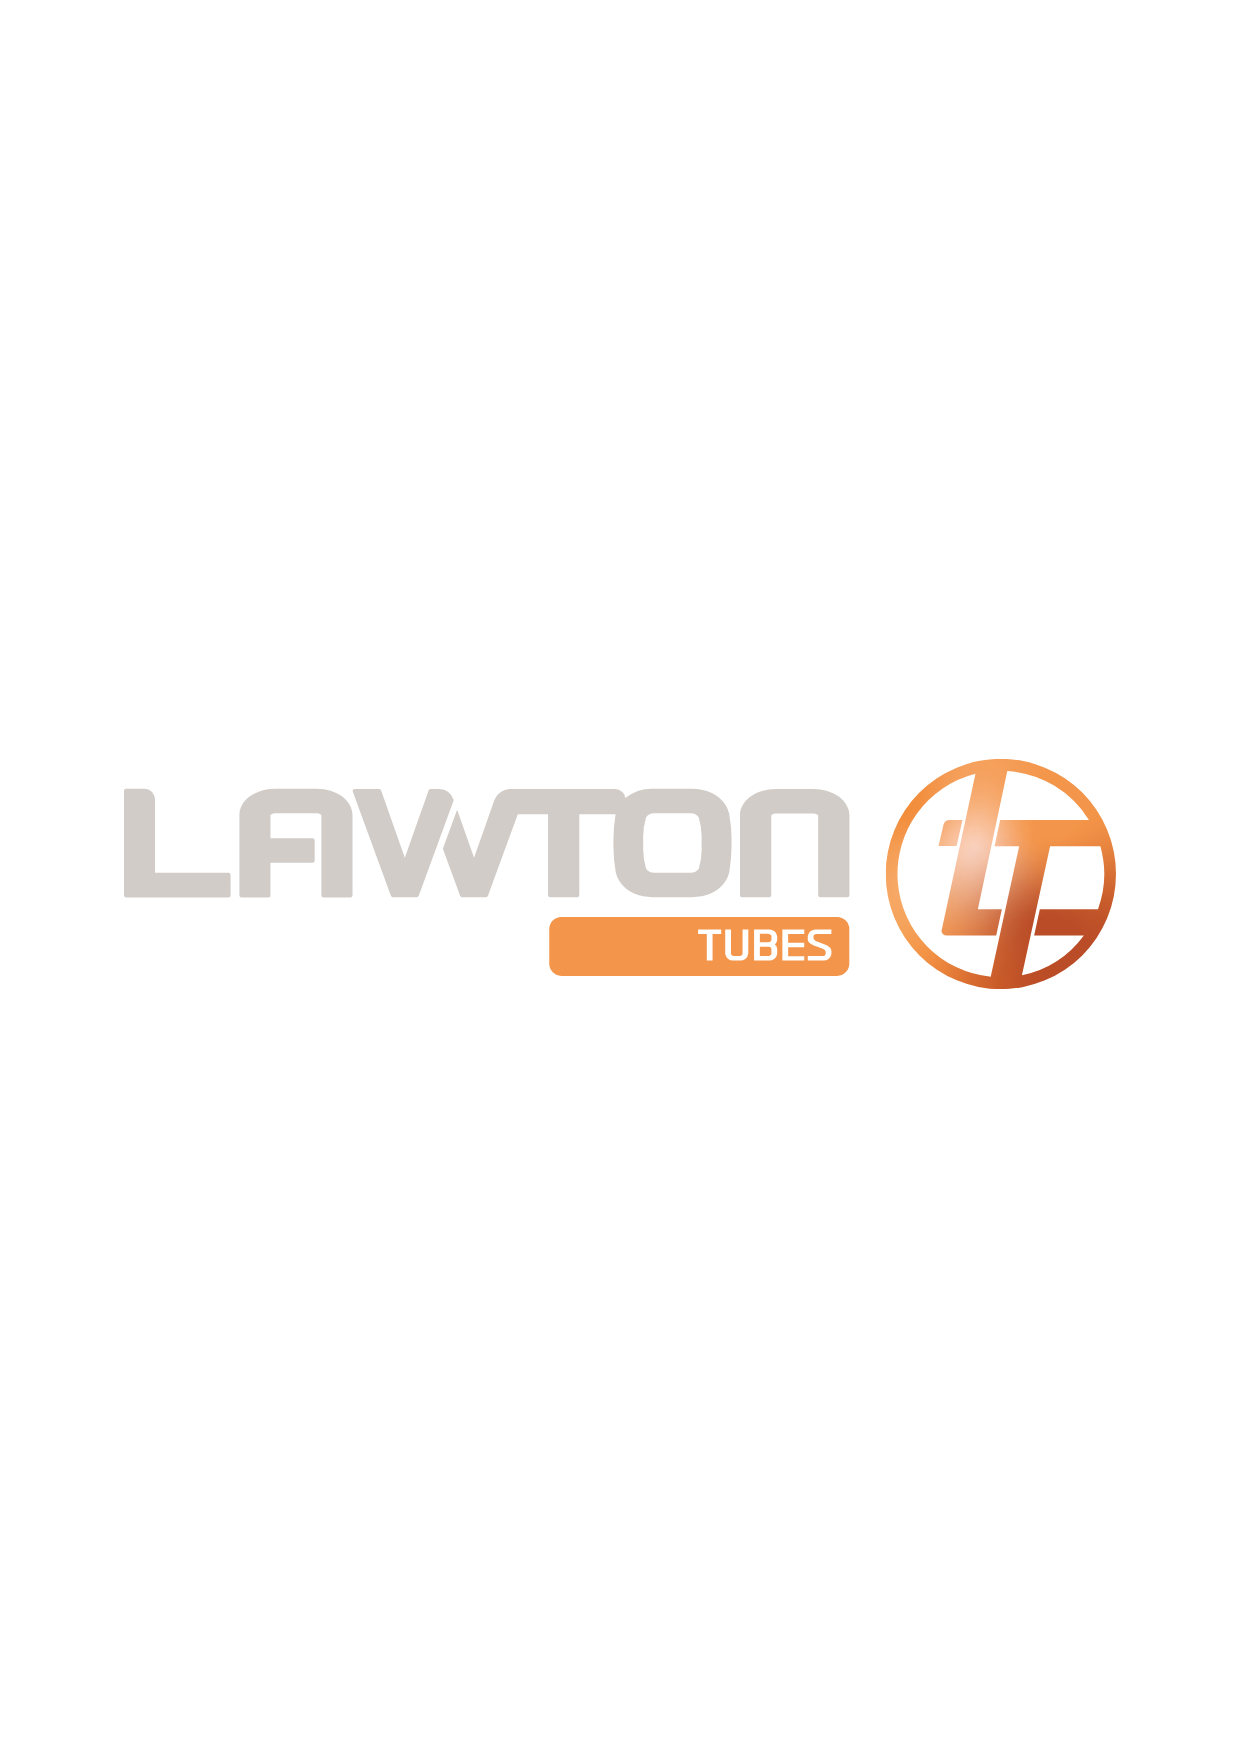 lawton logo